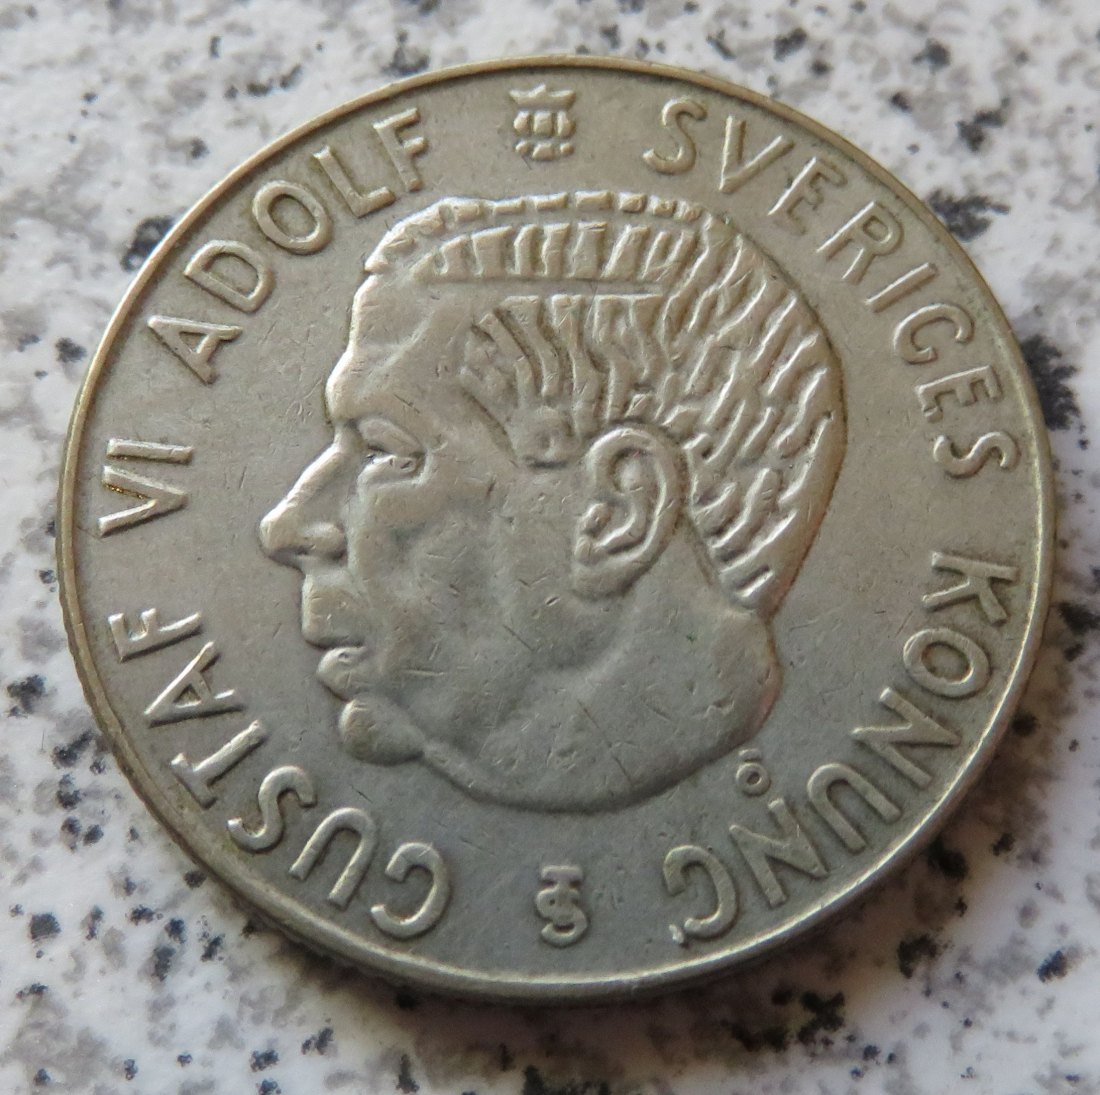  Schweden 1 Krona 1959   